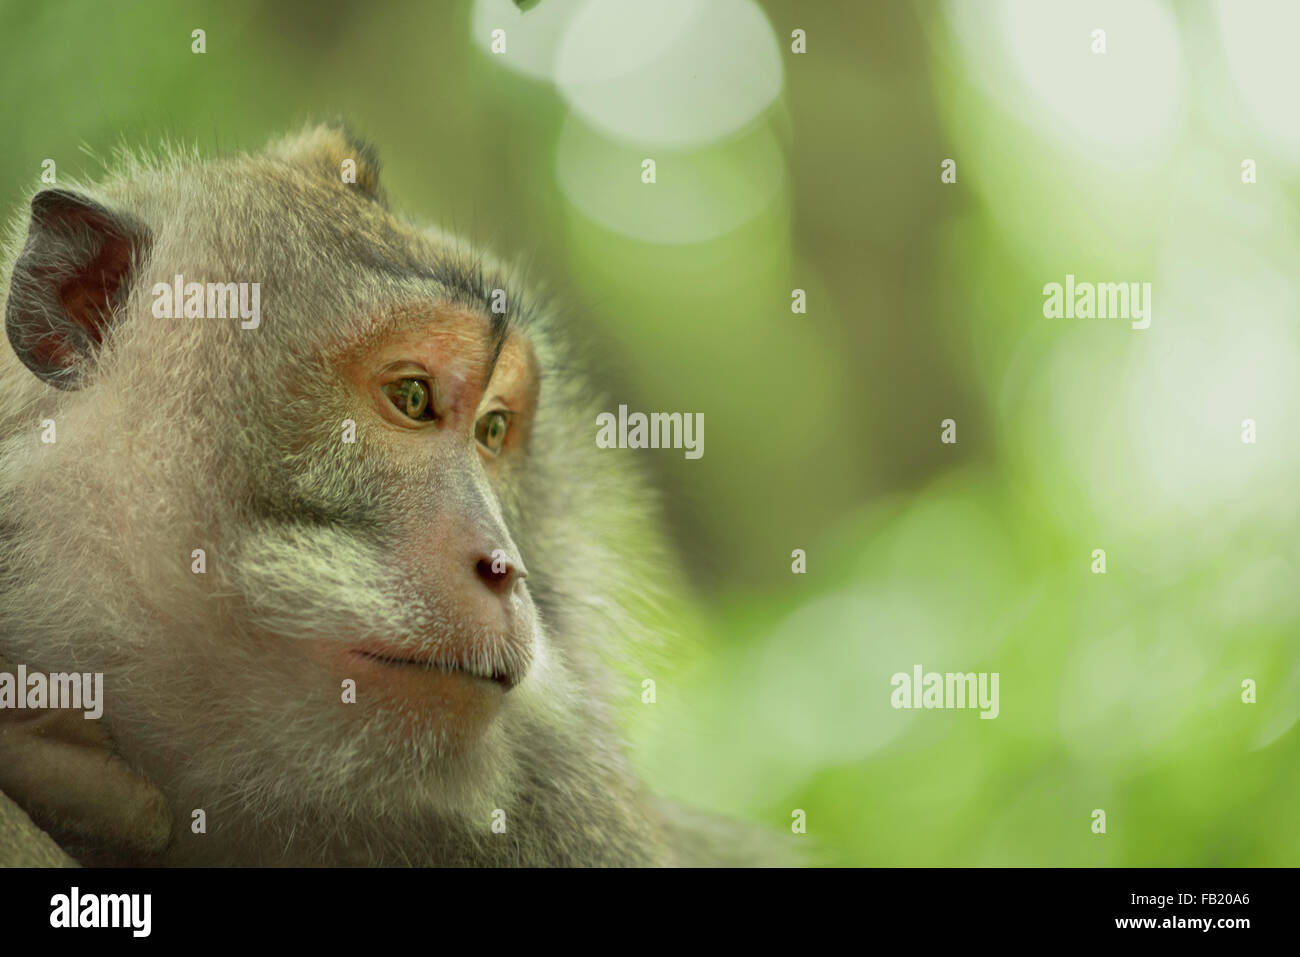 Wild scimmia adulta volto ritratto nella giungla, habitat naturale ambiente verde dello sfondo. Ideale per la fauna selvatica campagna. Foto Stock